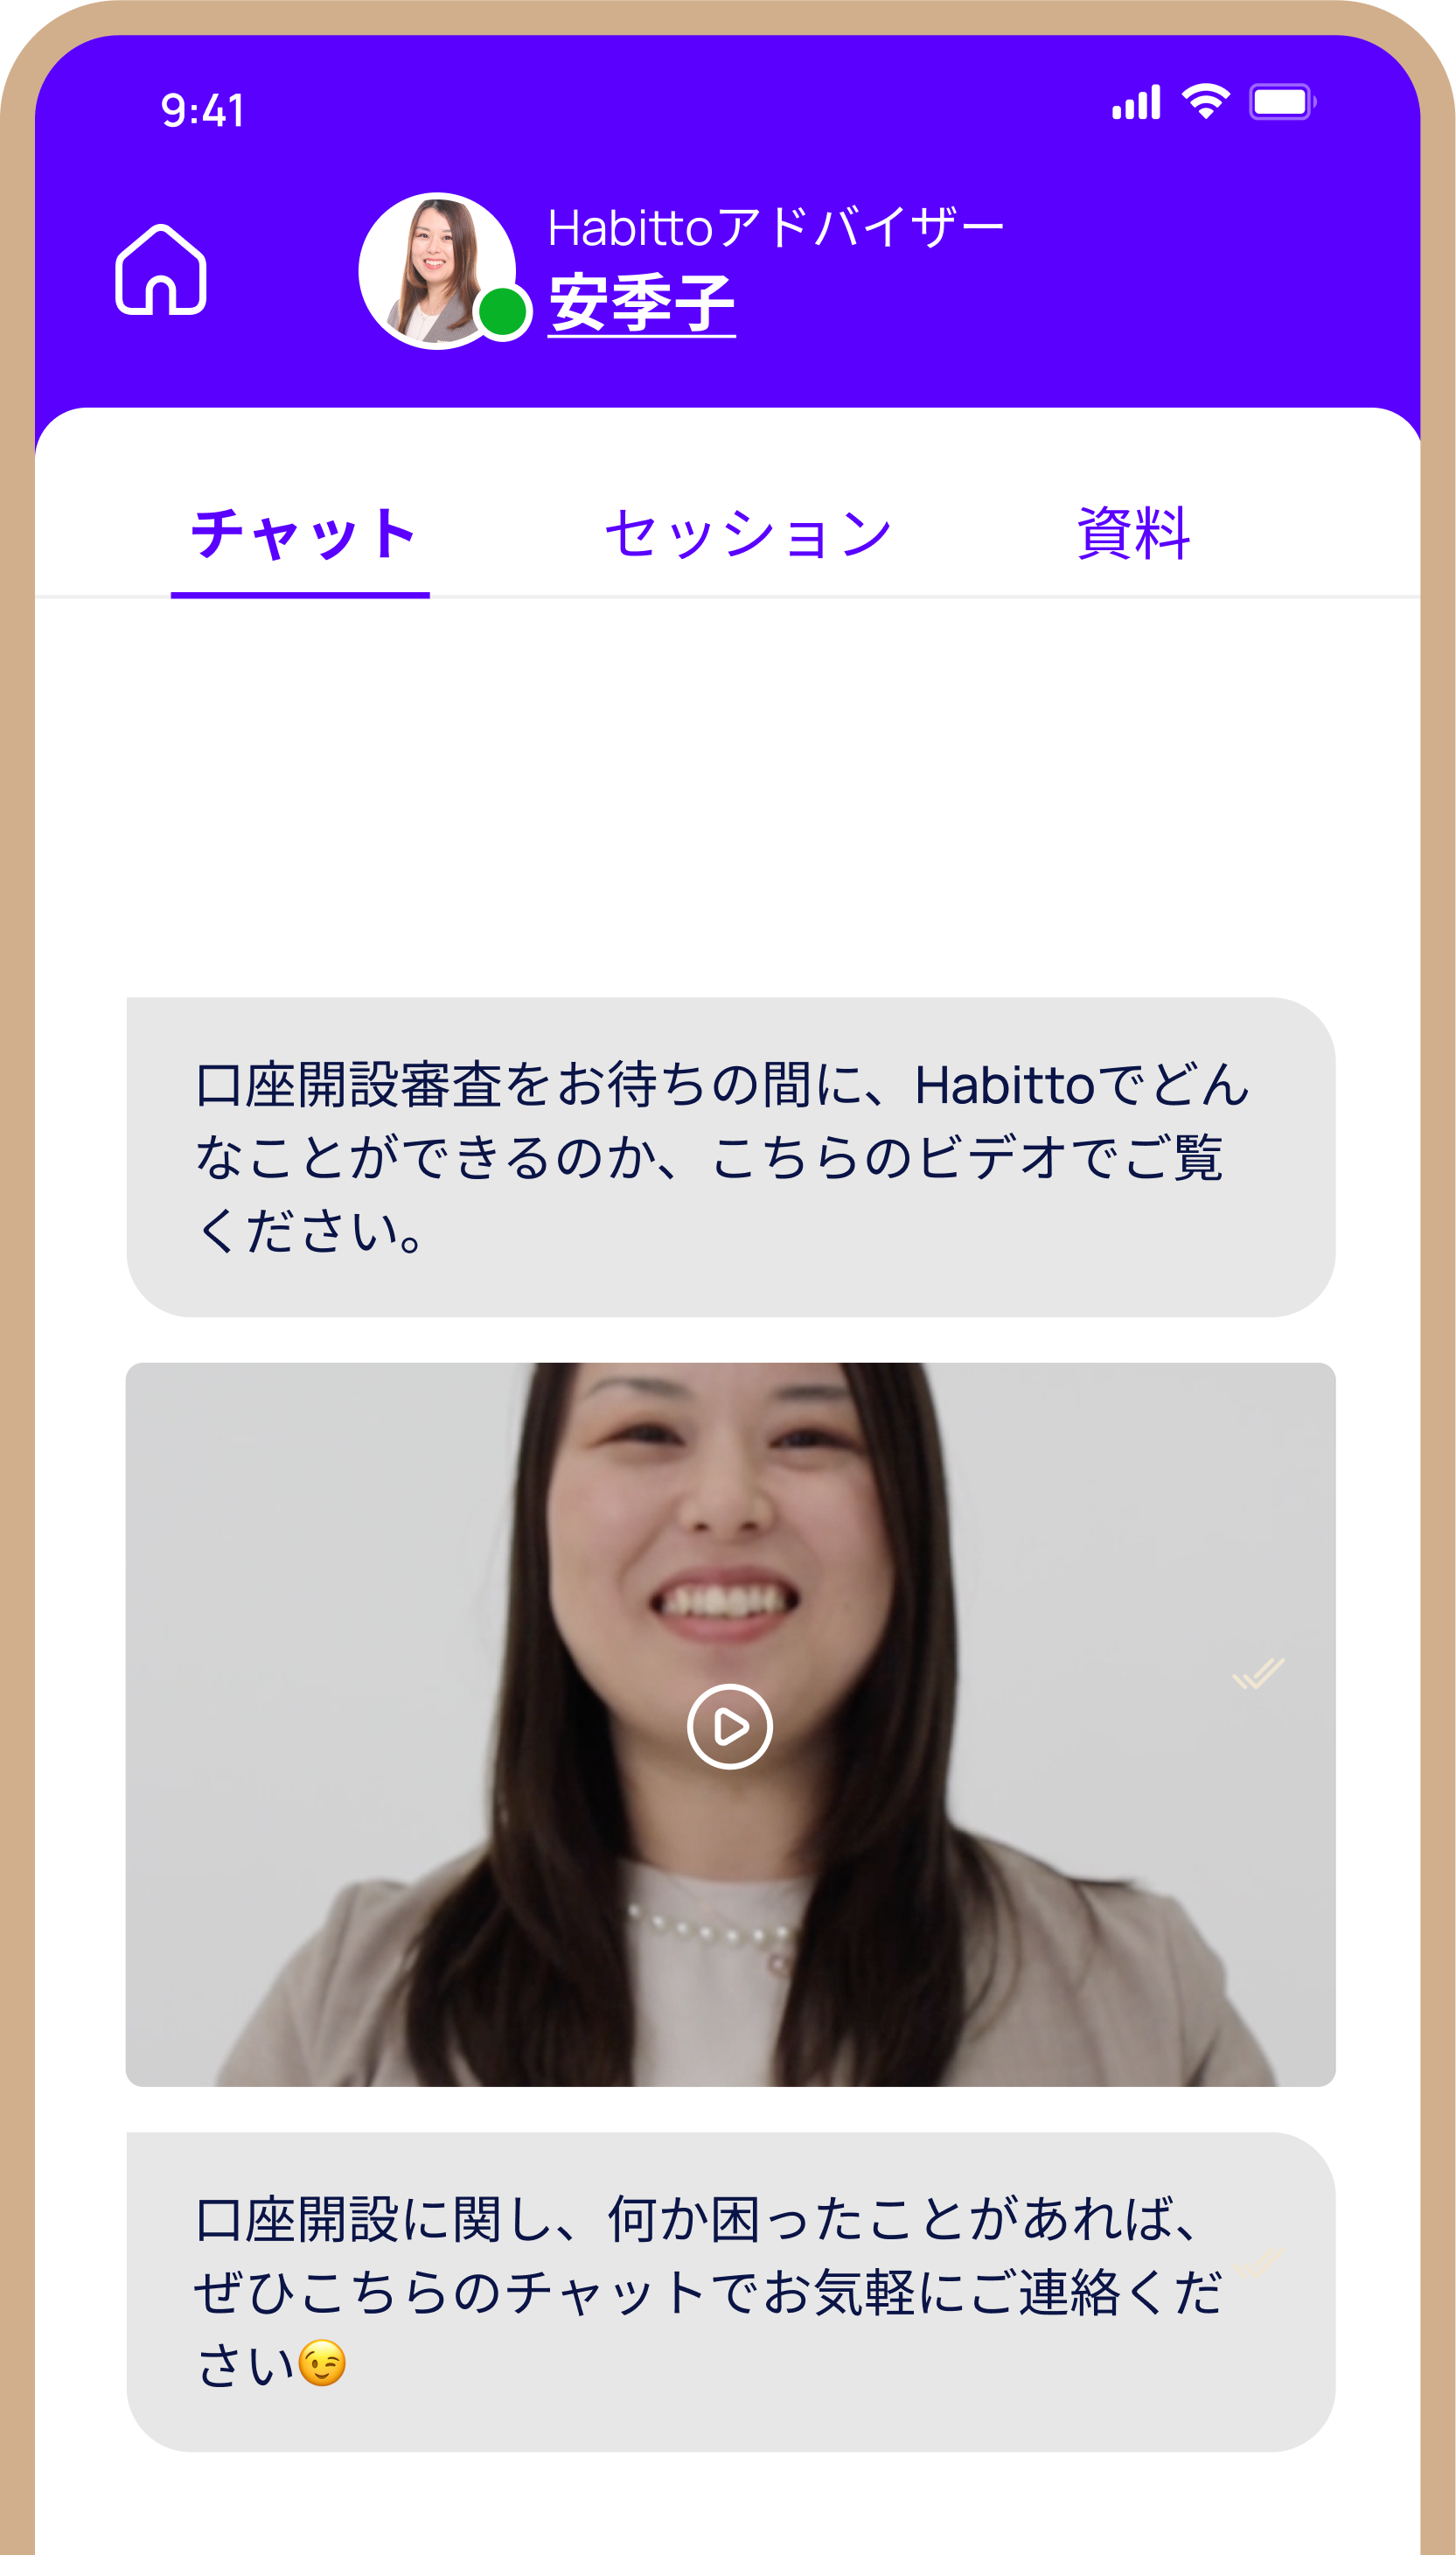 Habitto mobile app